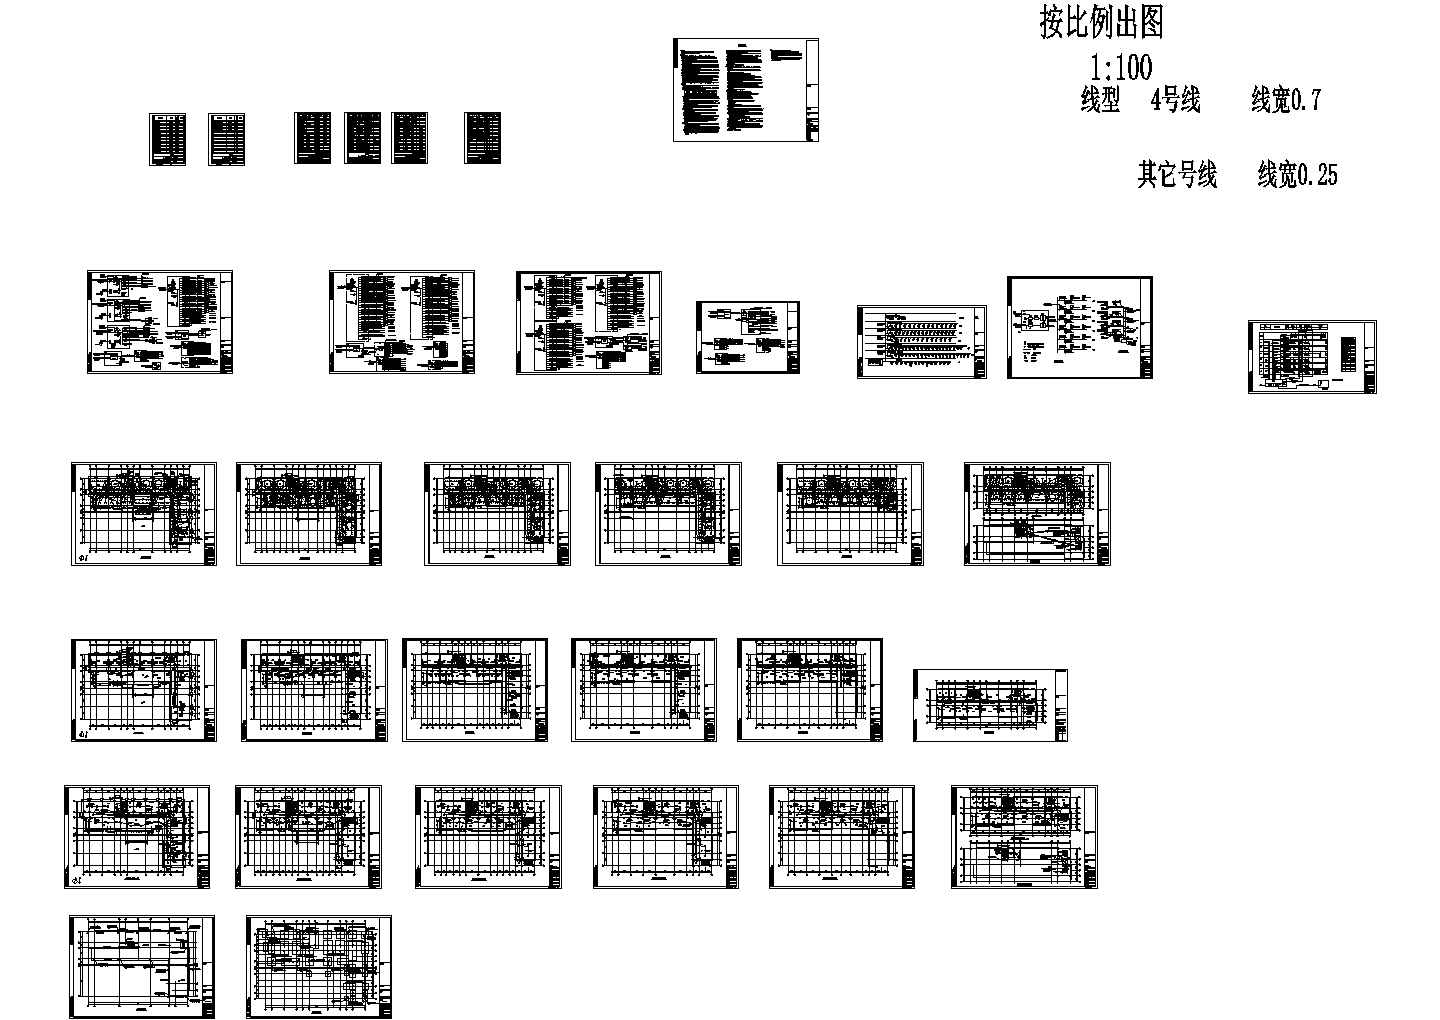 疾病预防控制中心业务楼电气施工图（共30张）